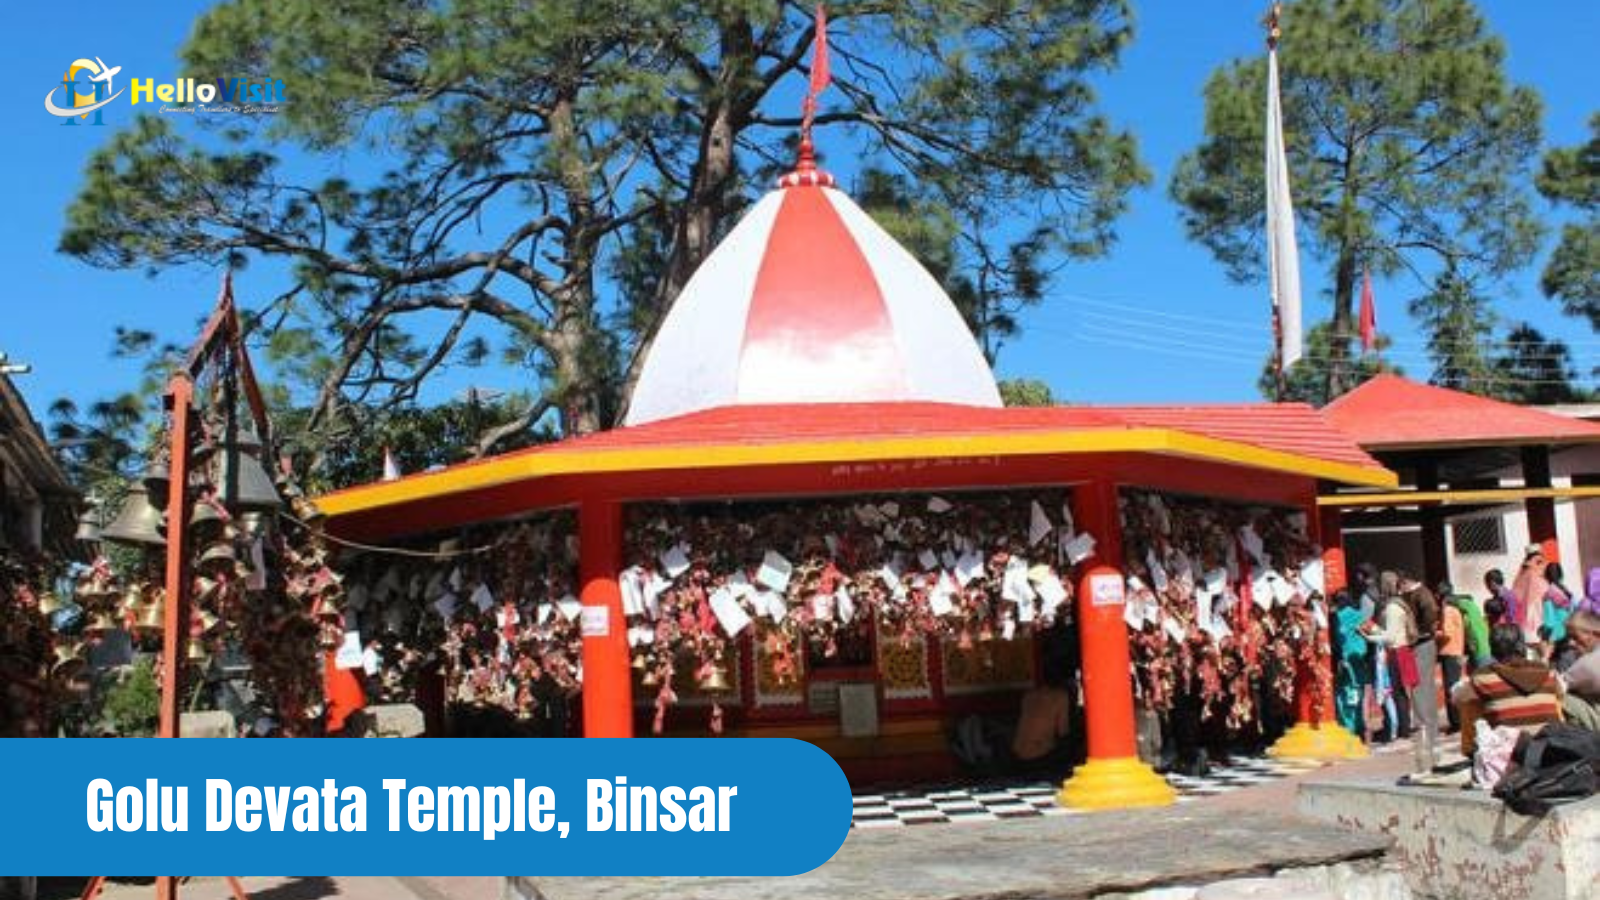 Golu Devata Temple, Binsar